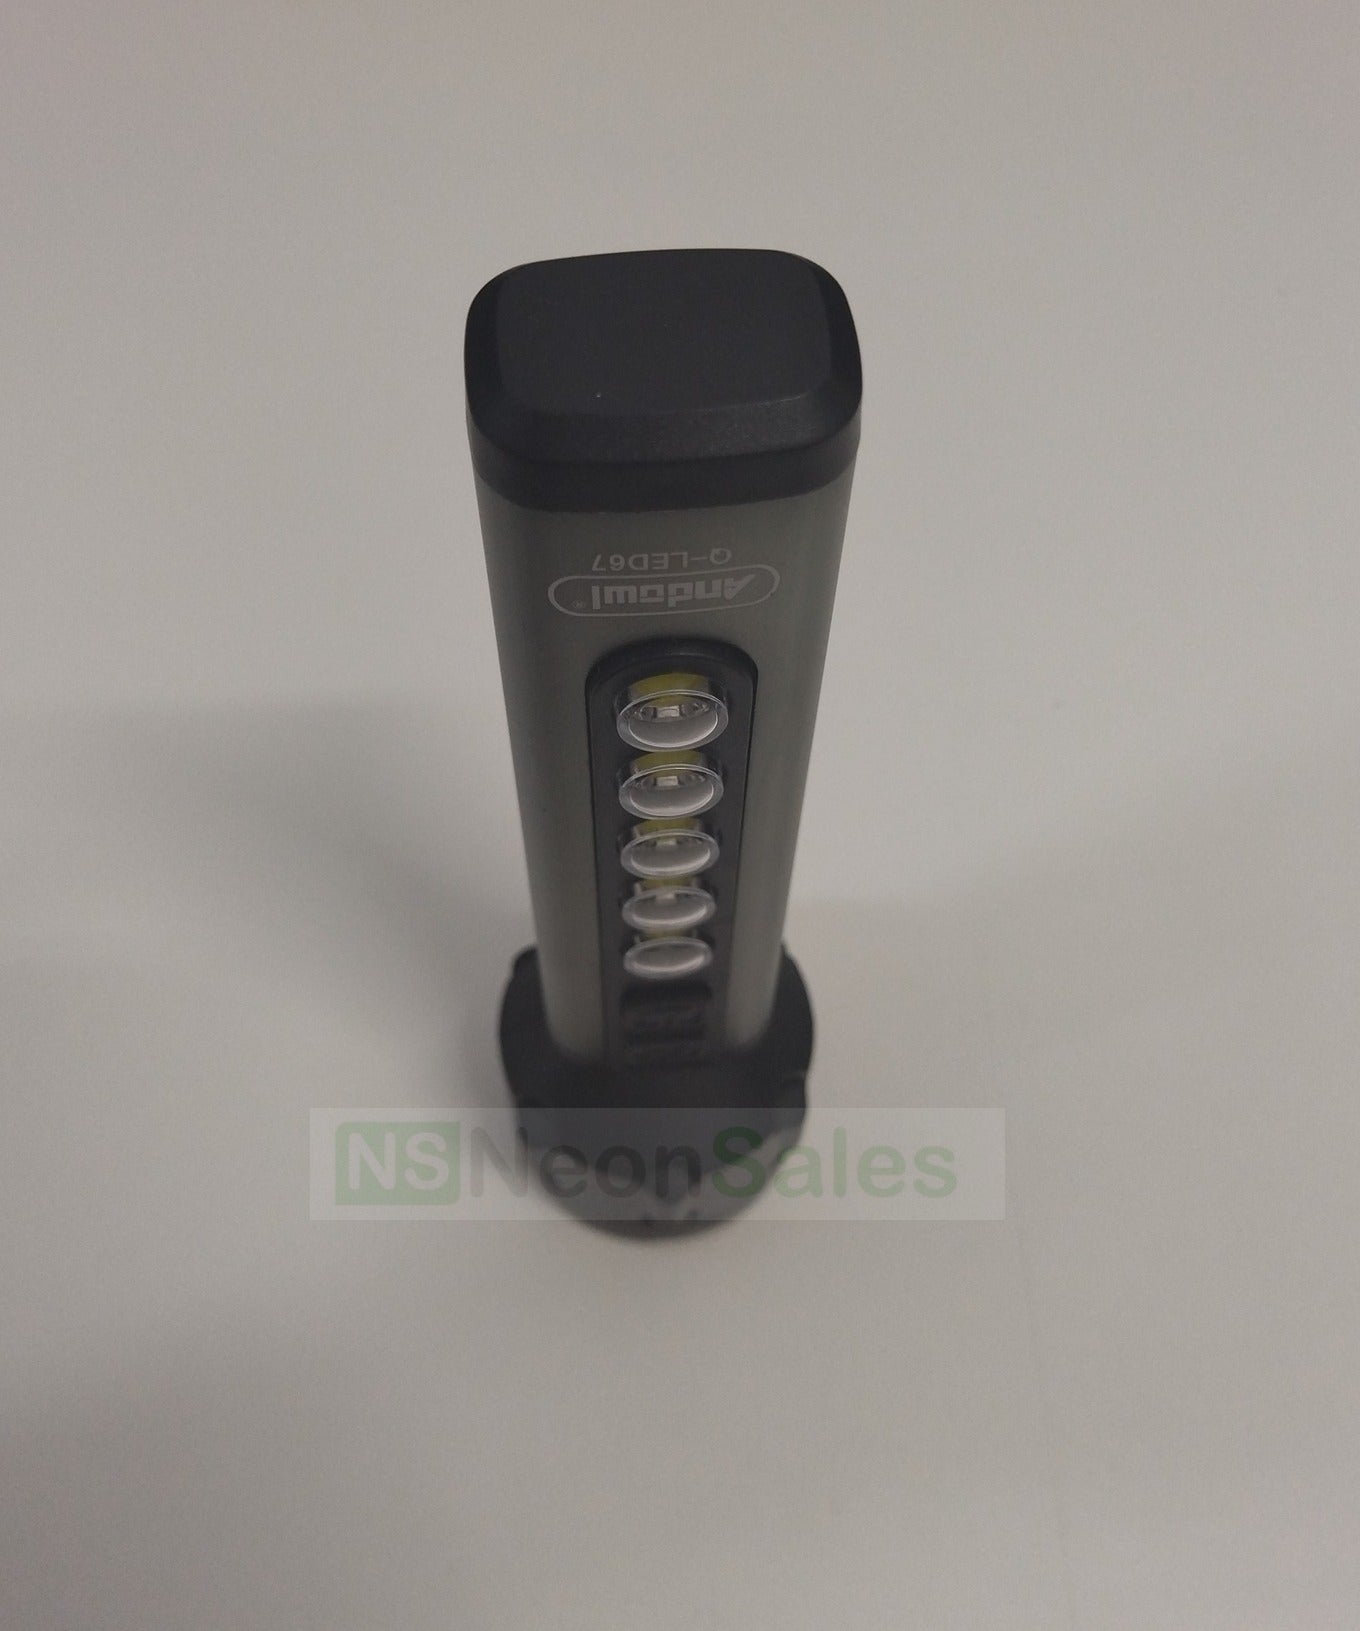 ANDOWL 5W+5COB LIGHT LED USB FLASHLIGHT - Q-LED67